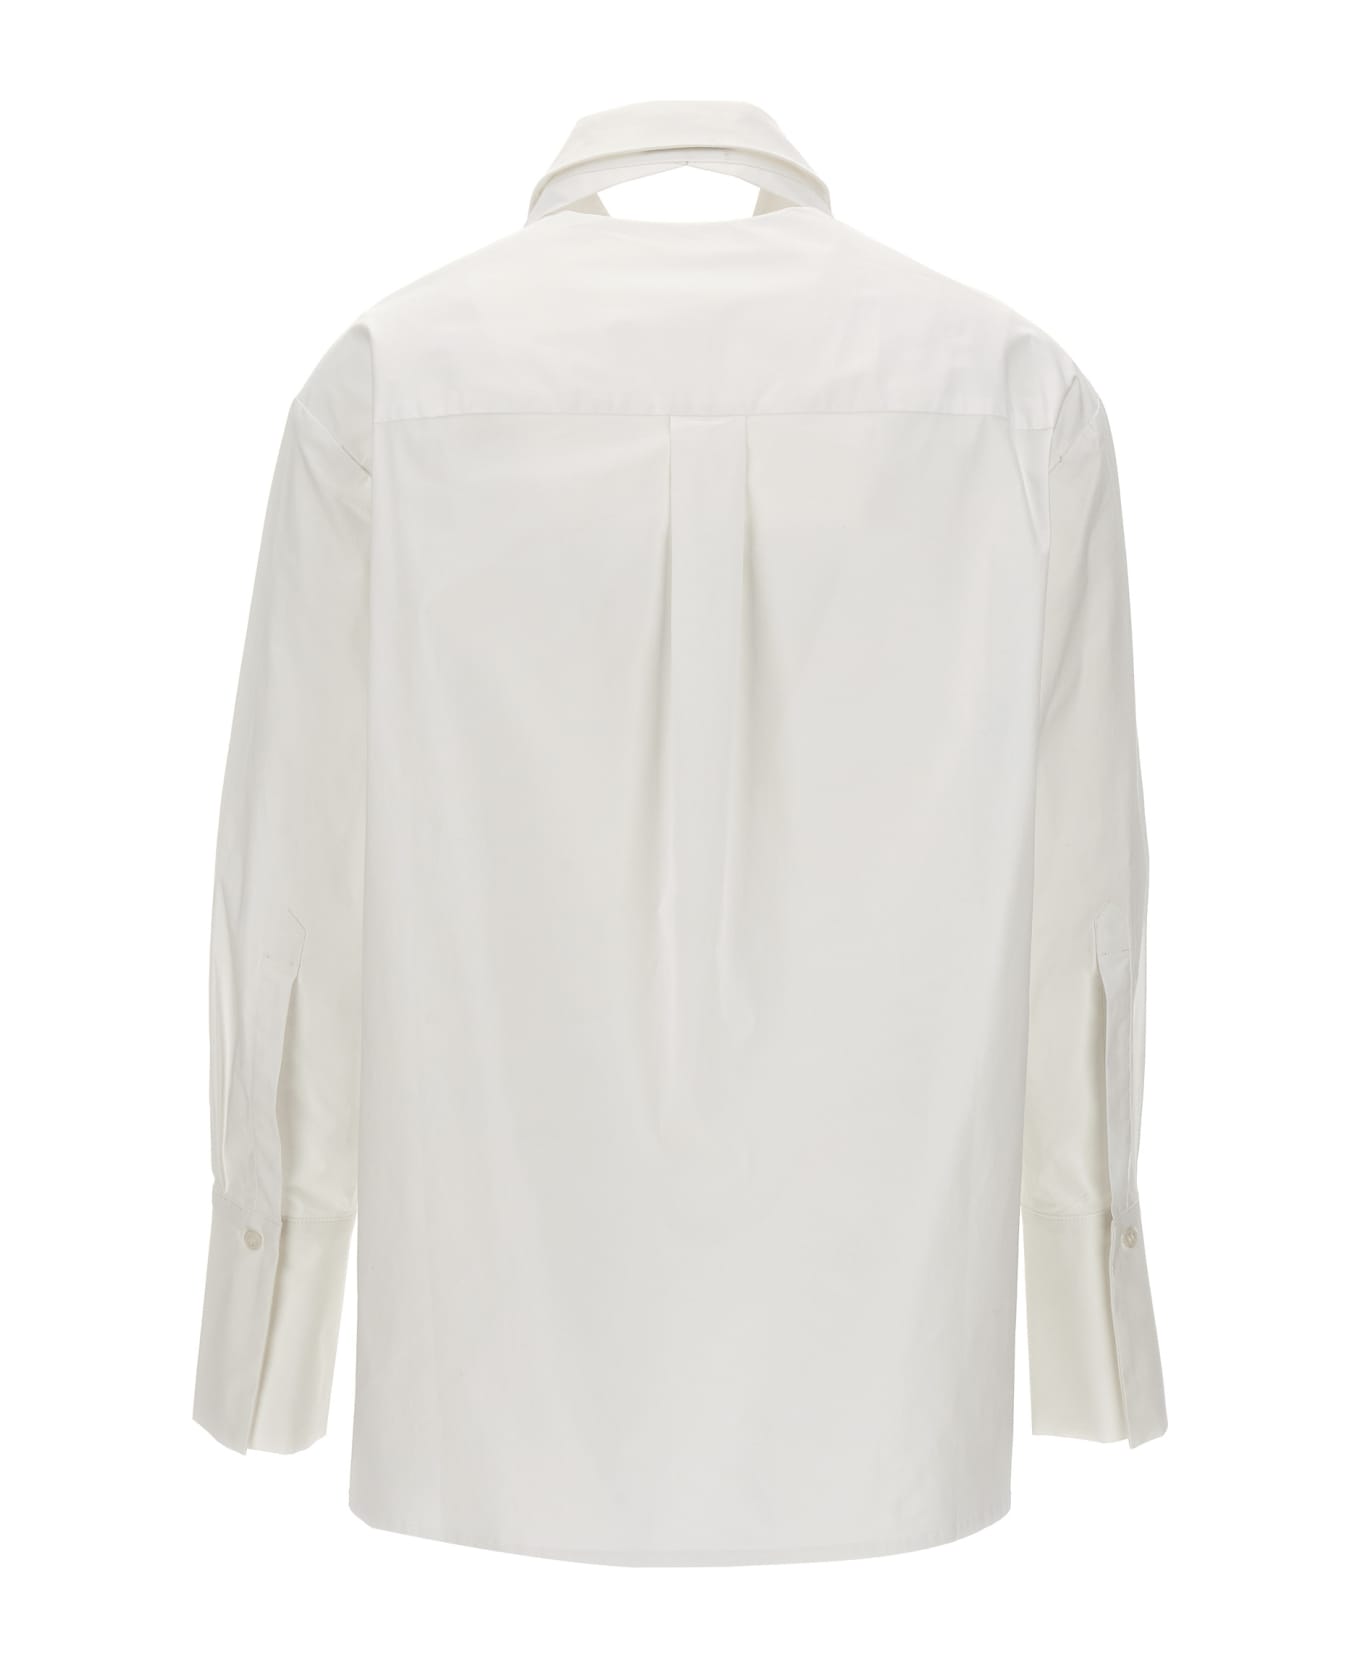 Balossa 'mirta' Shirt - White シャツ